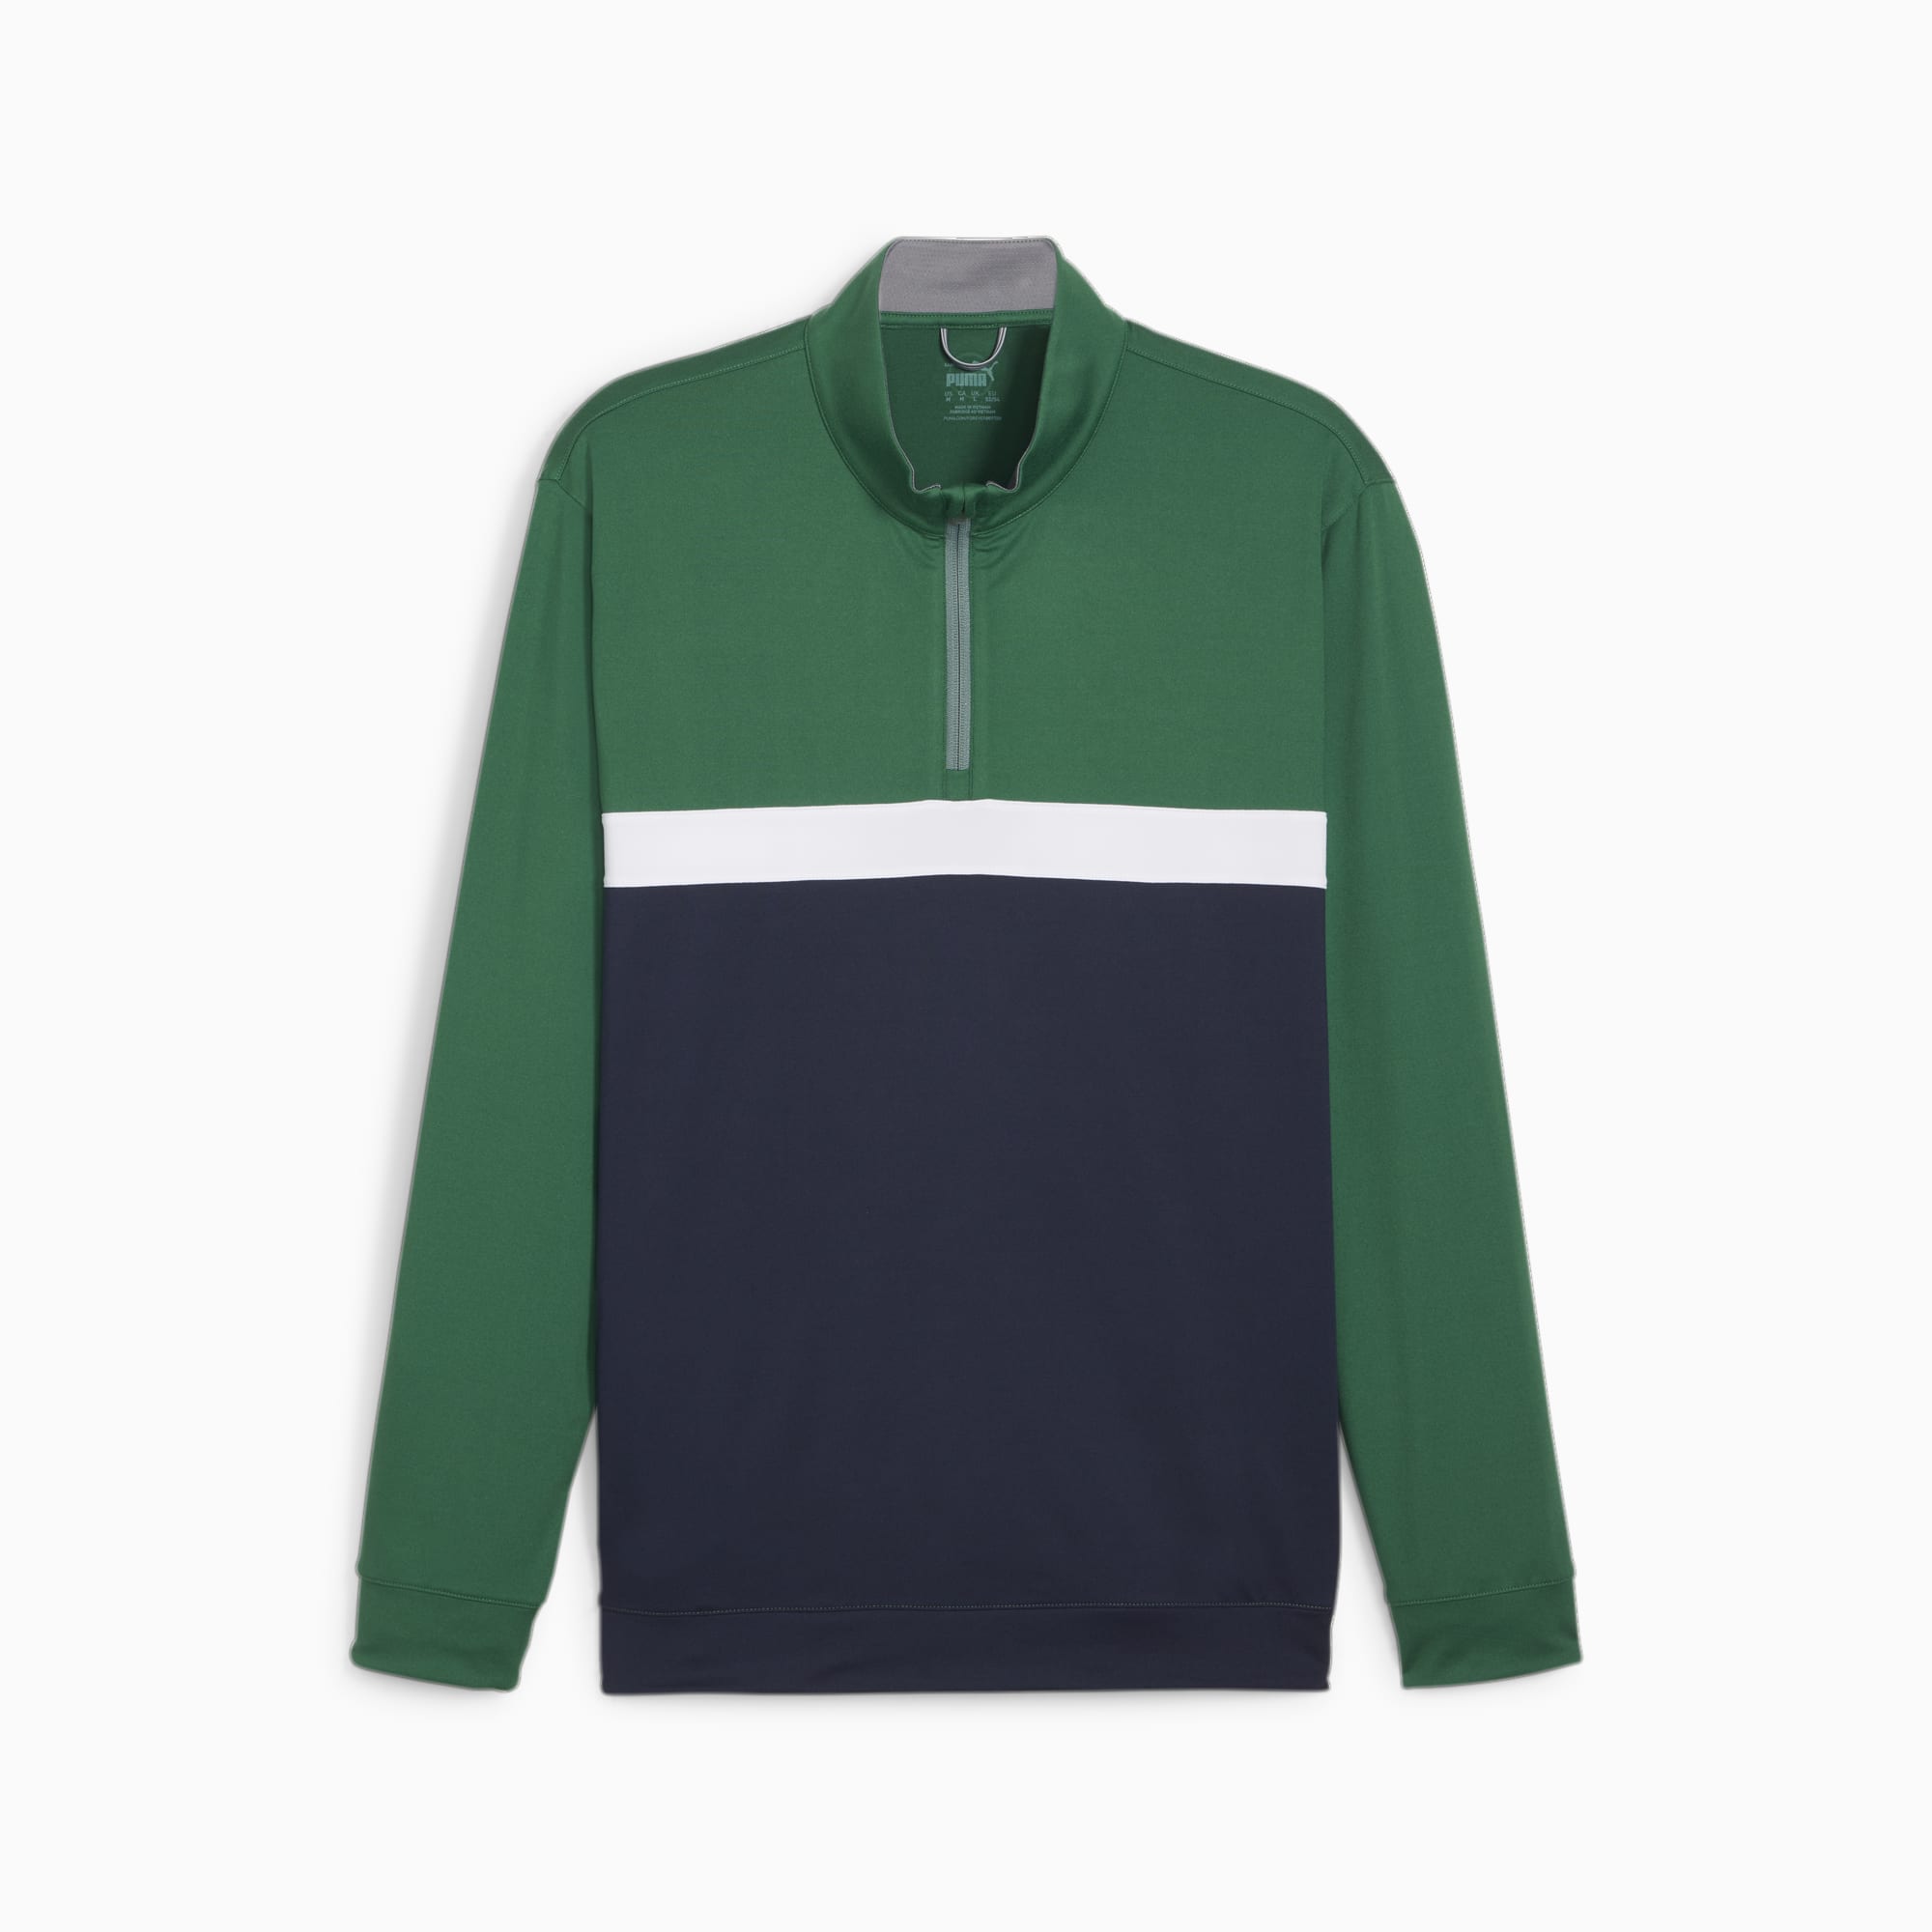 Pure Colorblock Men's Golf 1/4 Zip Pullover